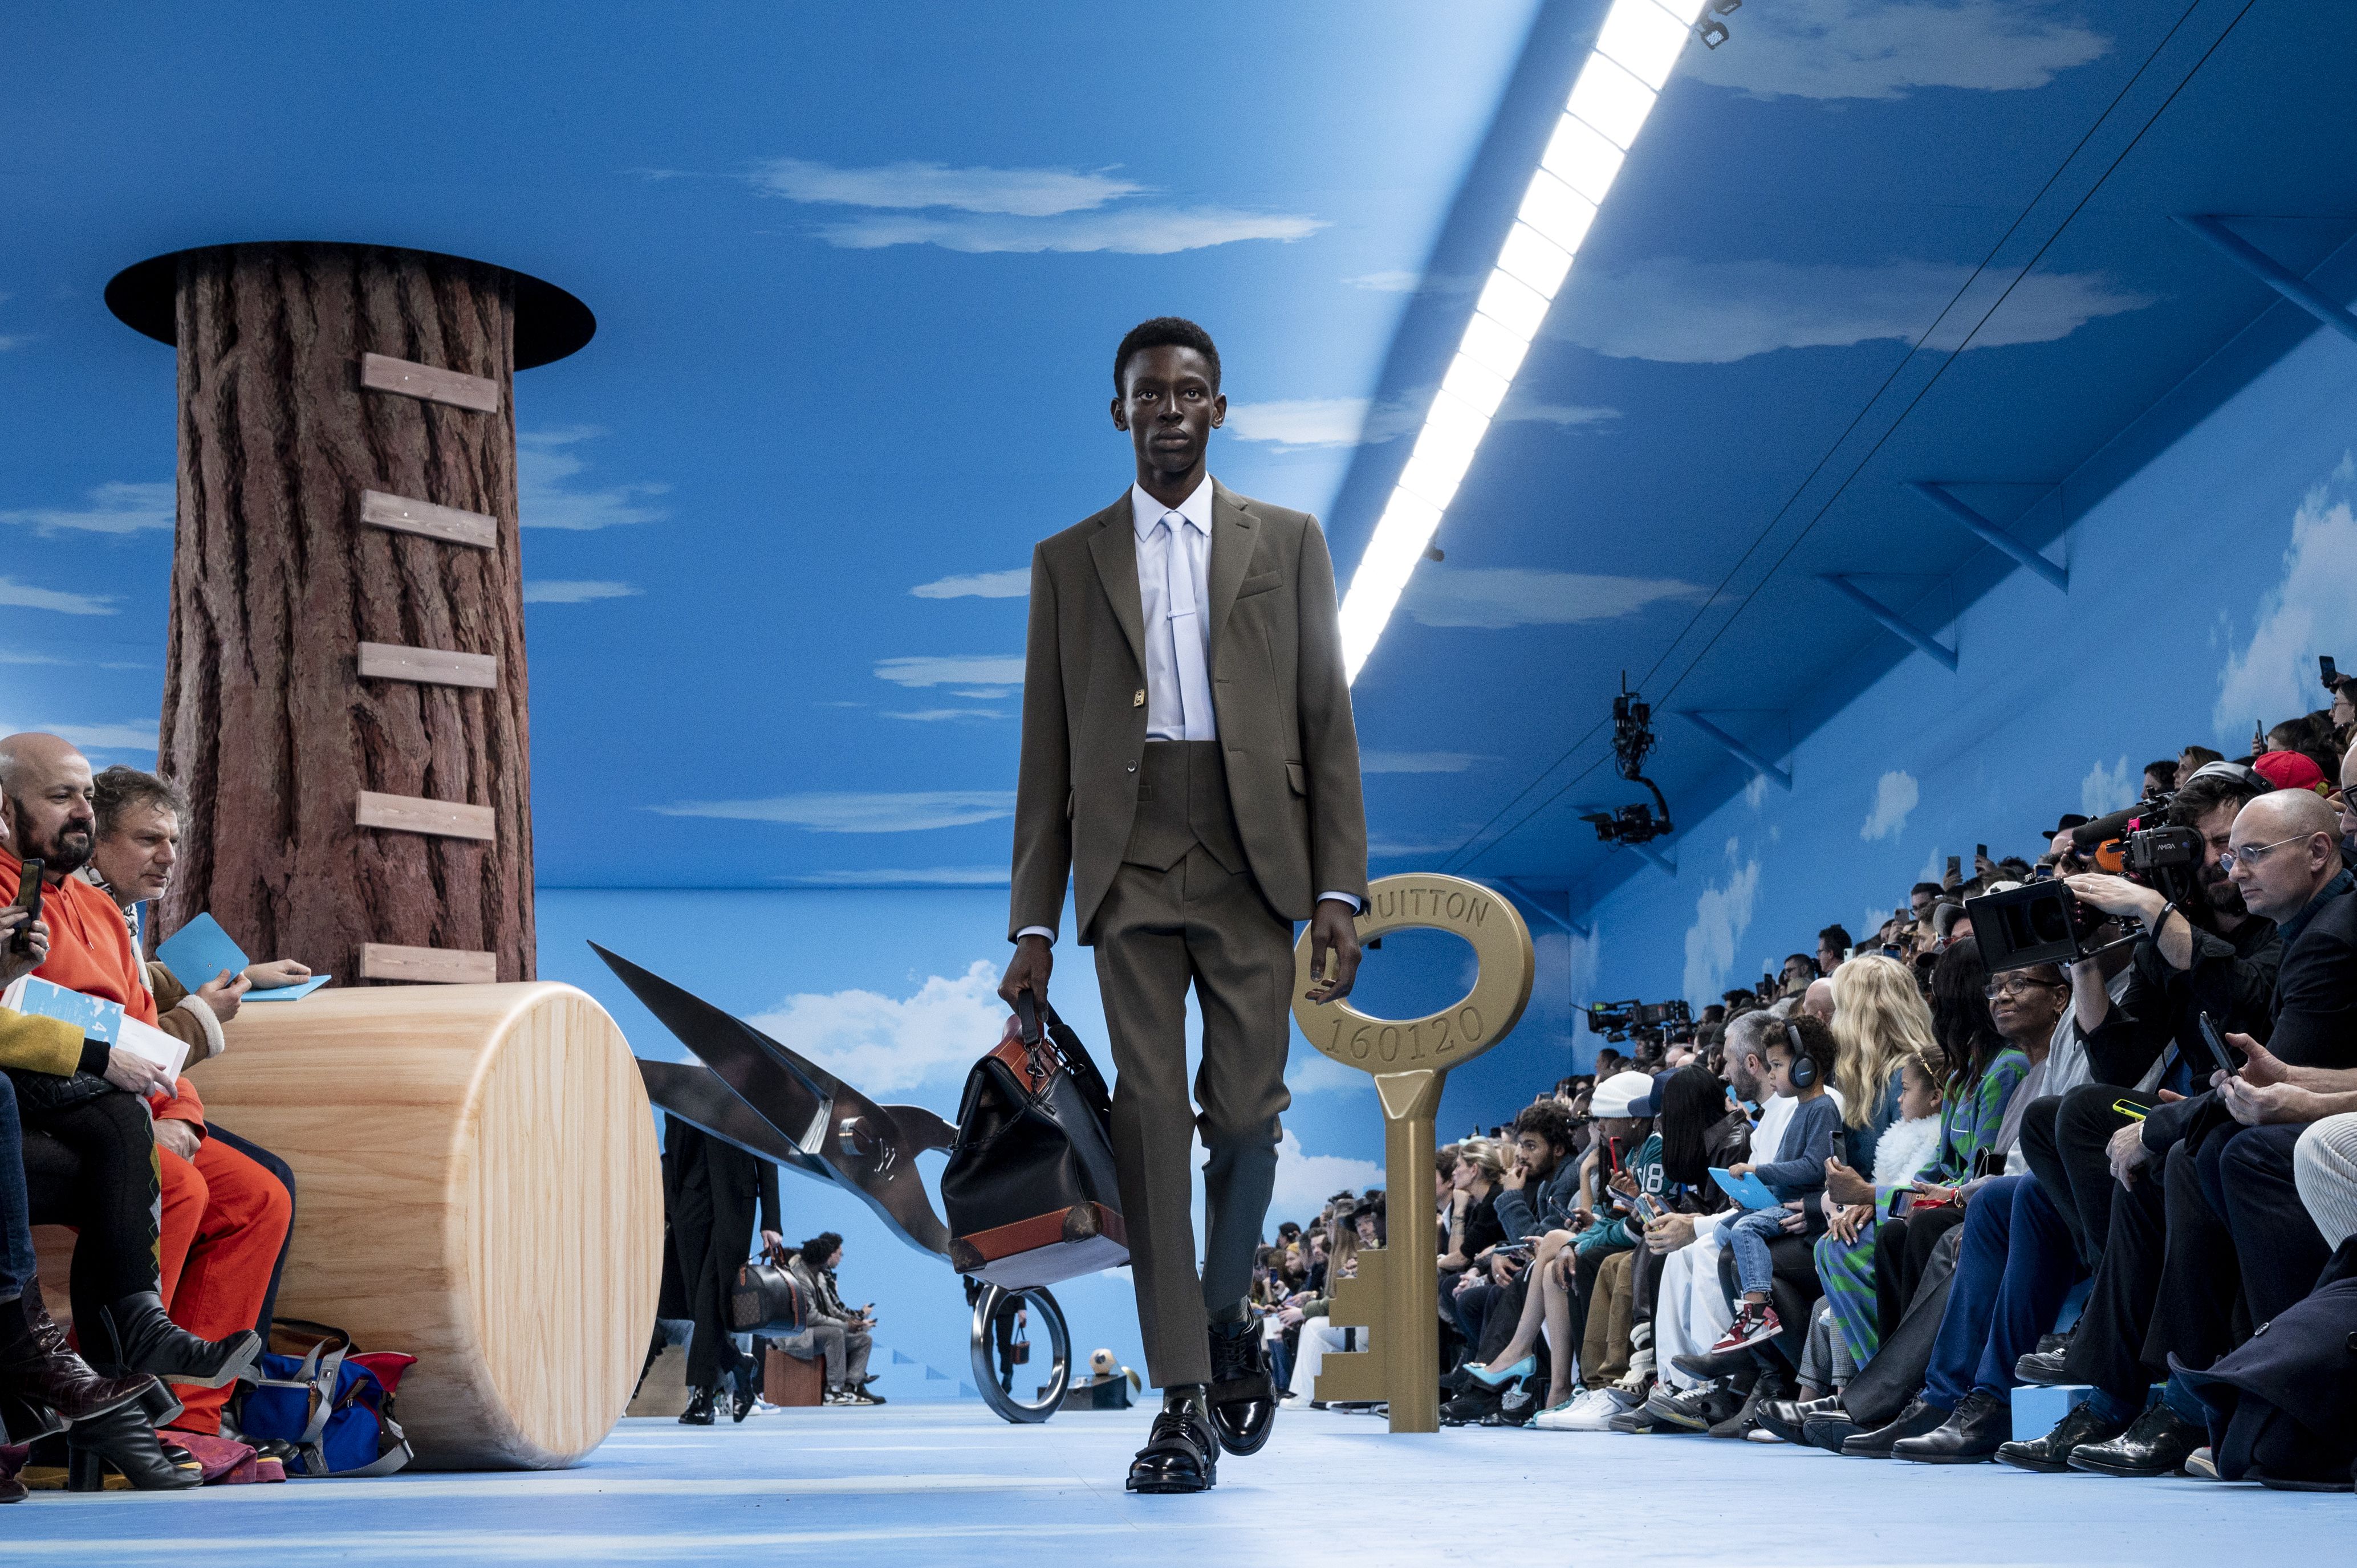 Louis Vuitton's Abloh makes suit and tie street on Paris catwalk - CGTN